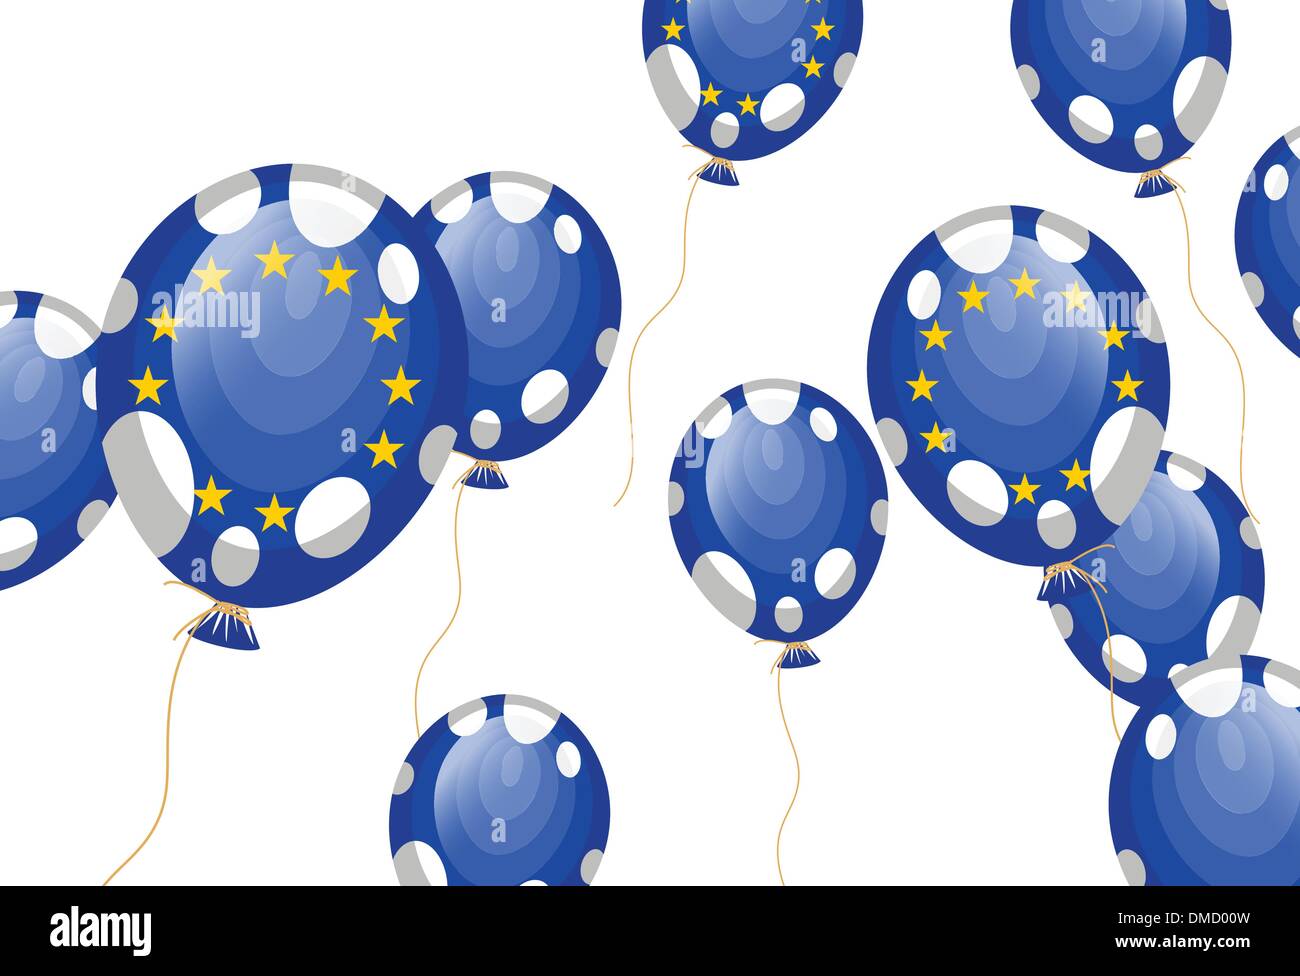 Ballon drapeau de l'Union européenne Illustration de Vecteur